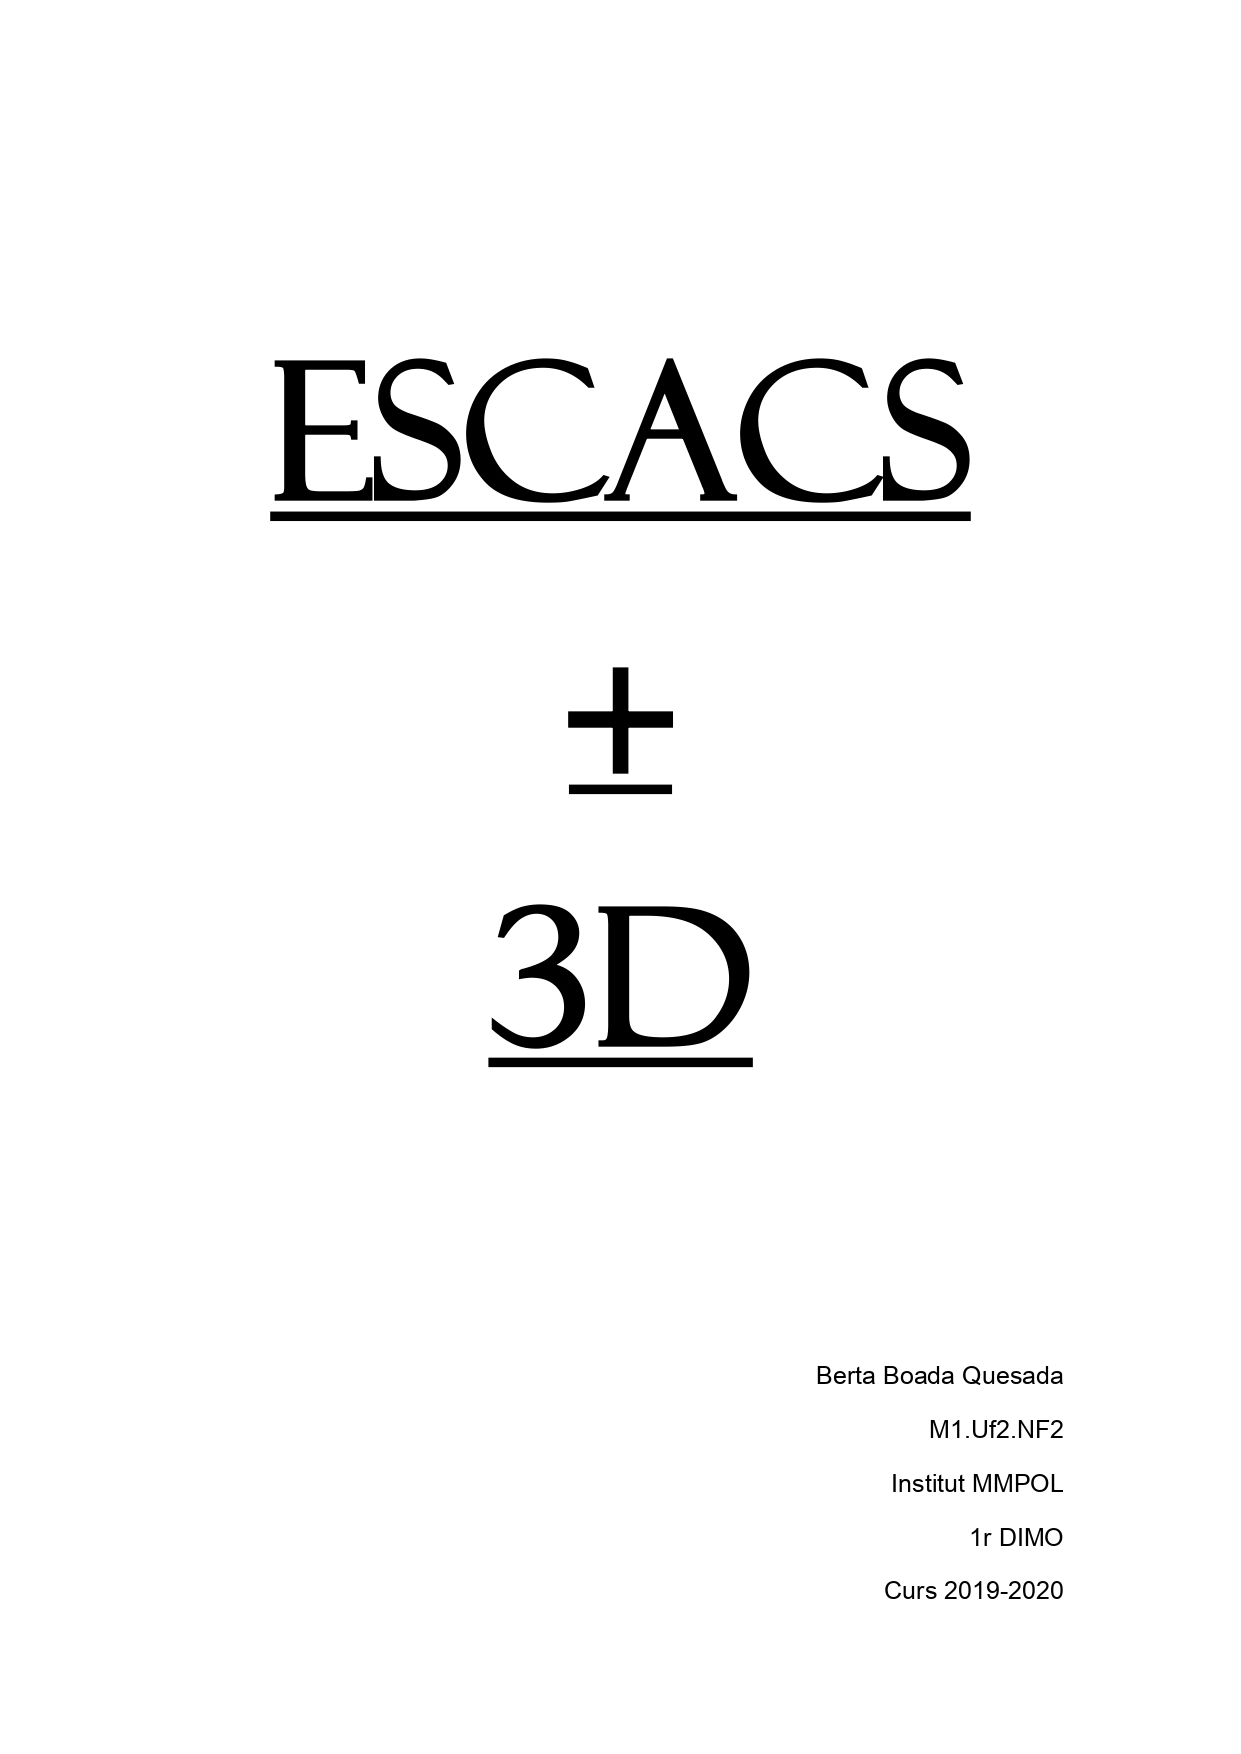 Escacs3D - Berta Boada (1)_pages-to-jpg-0001